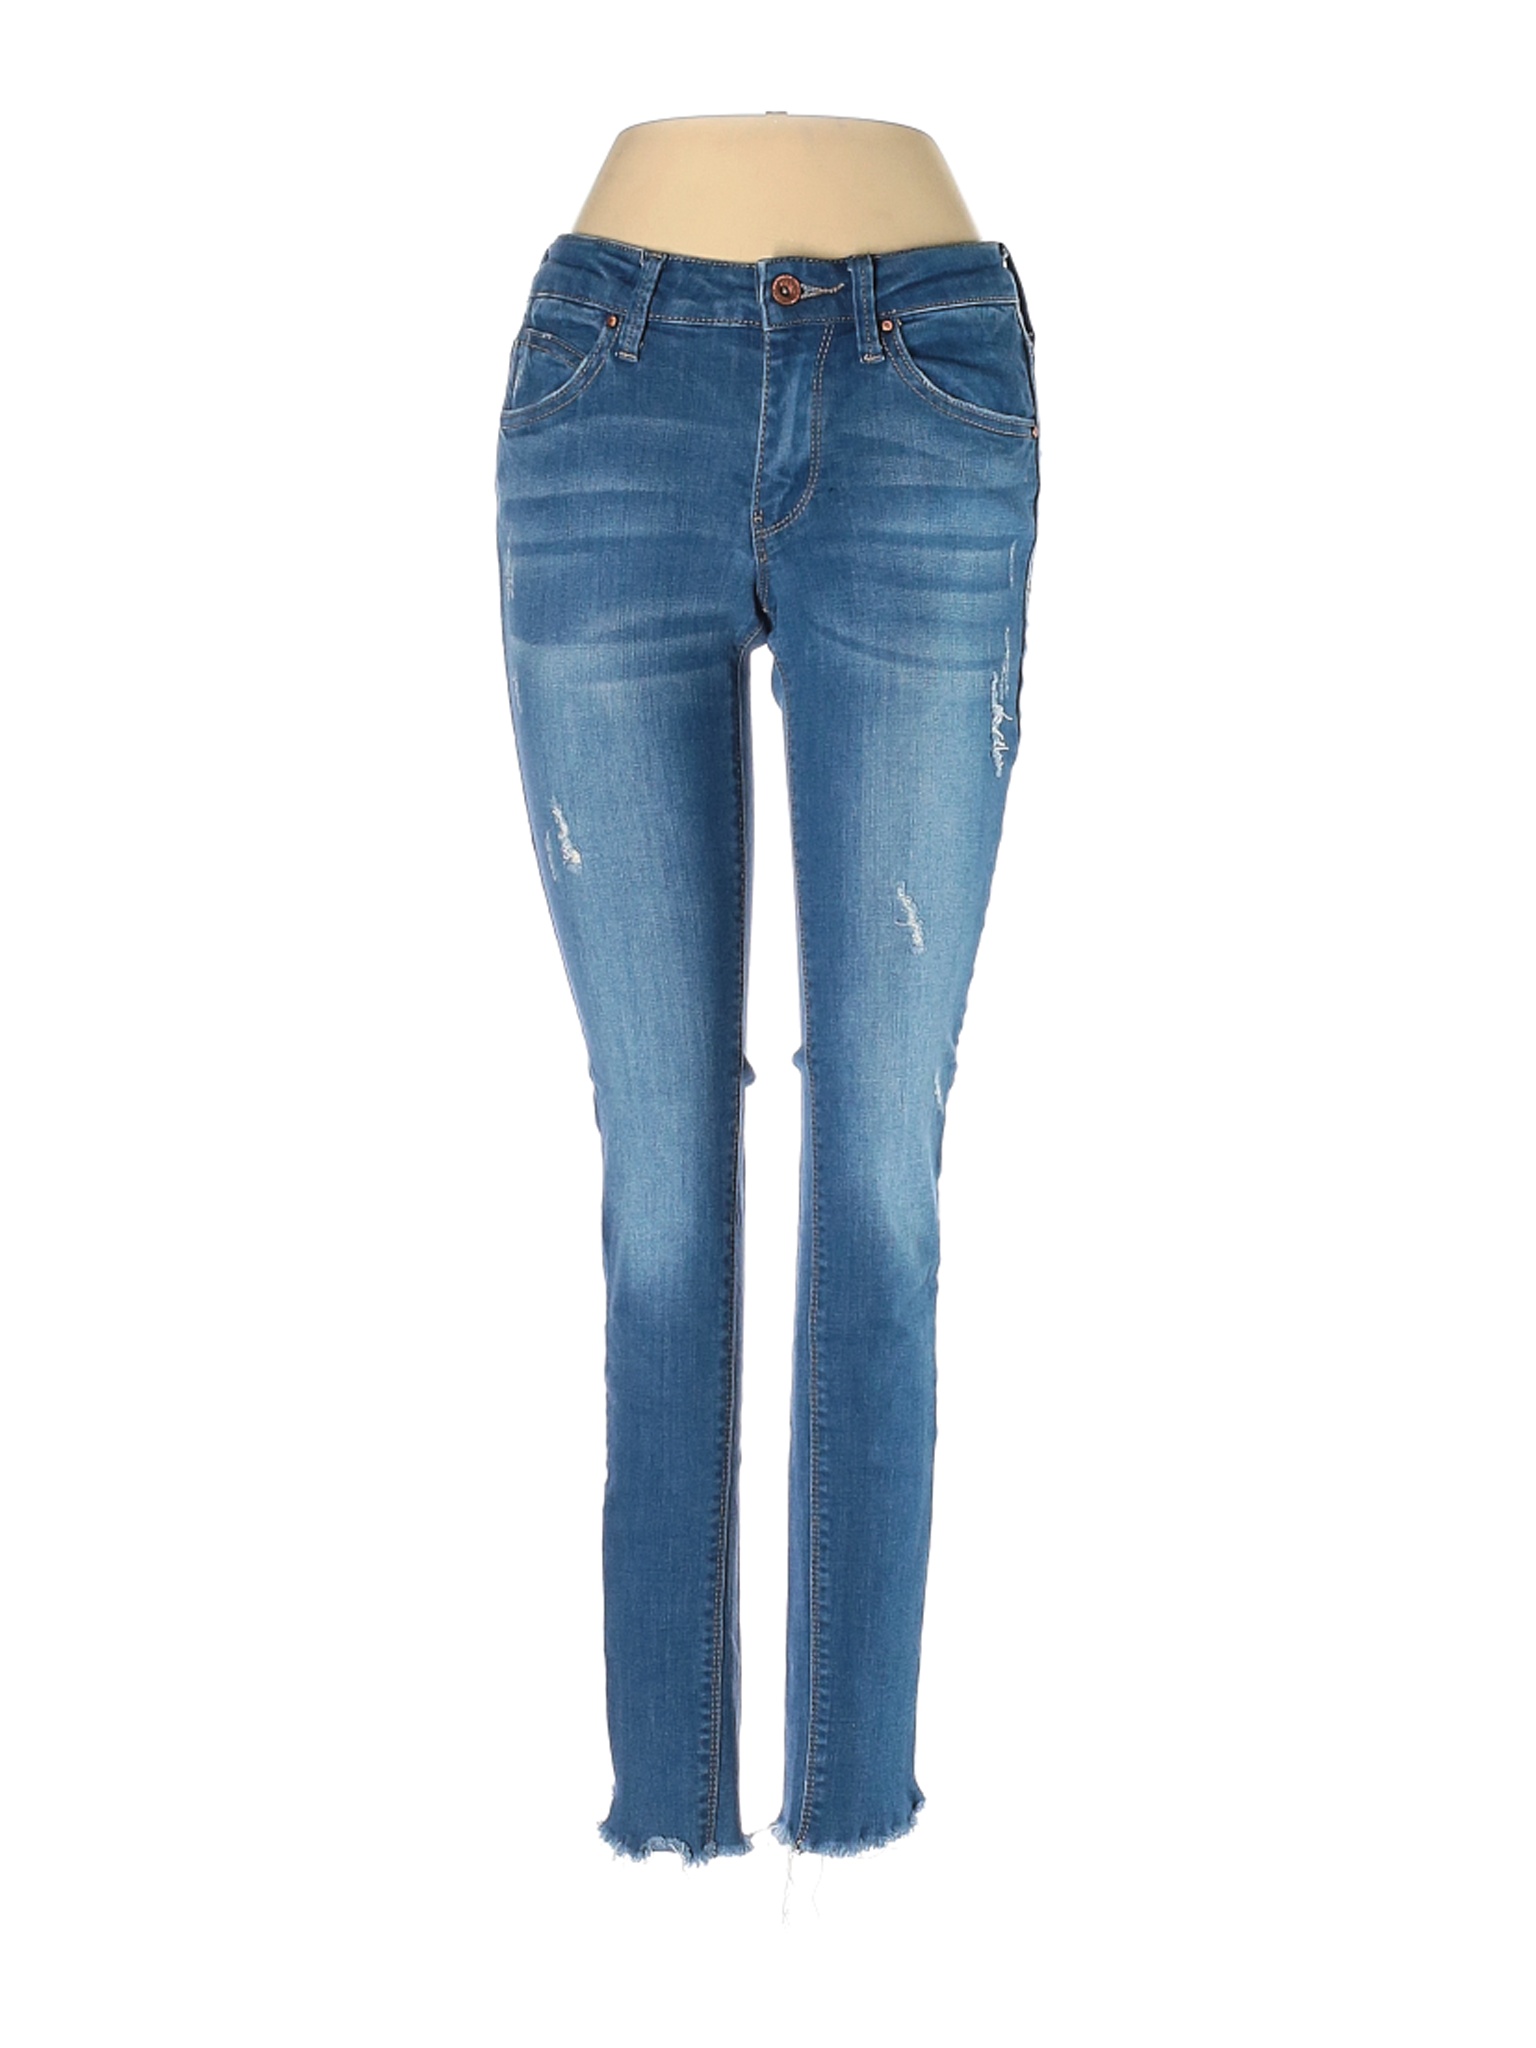 A2 Jeans Women Blue Jeans 0 | eBay